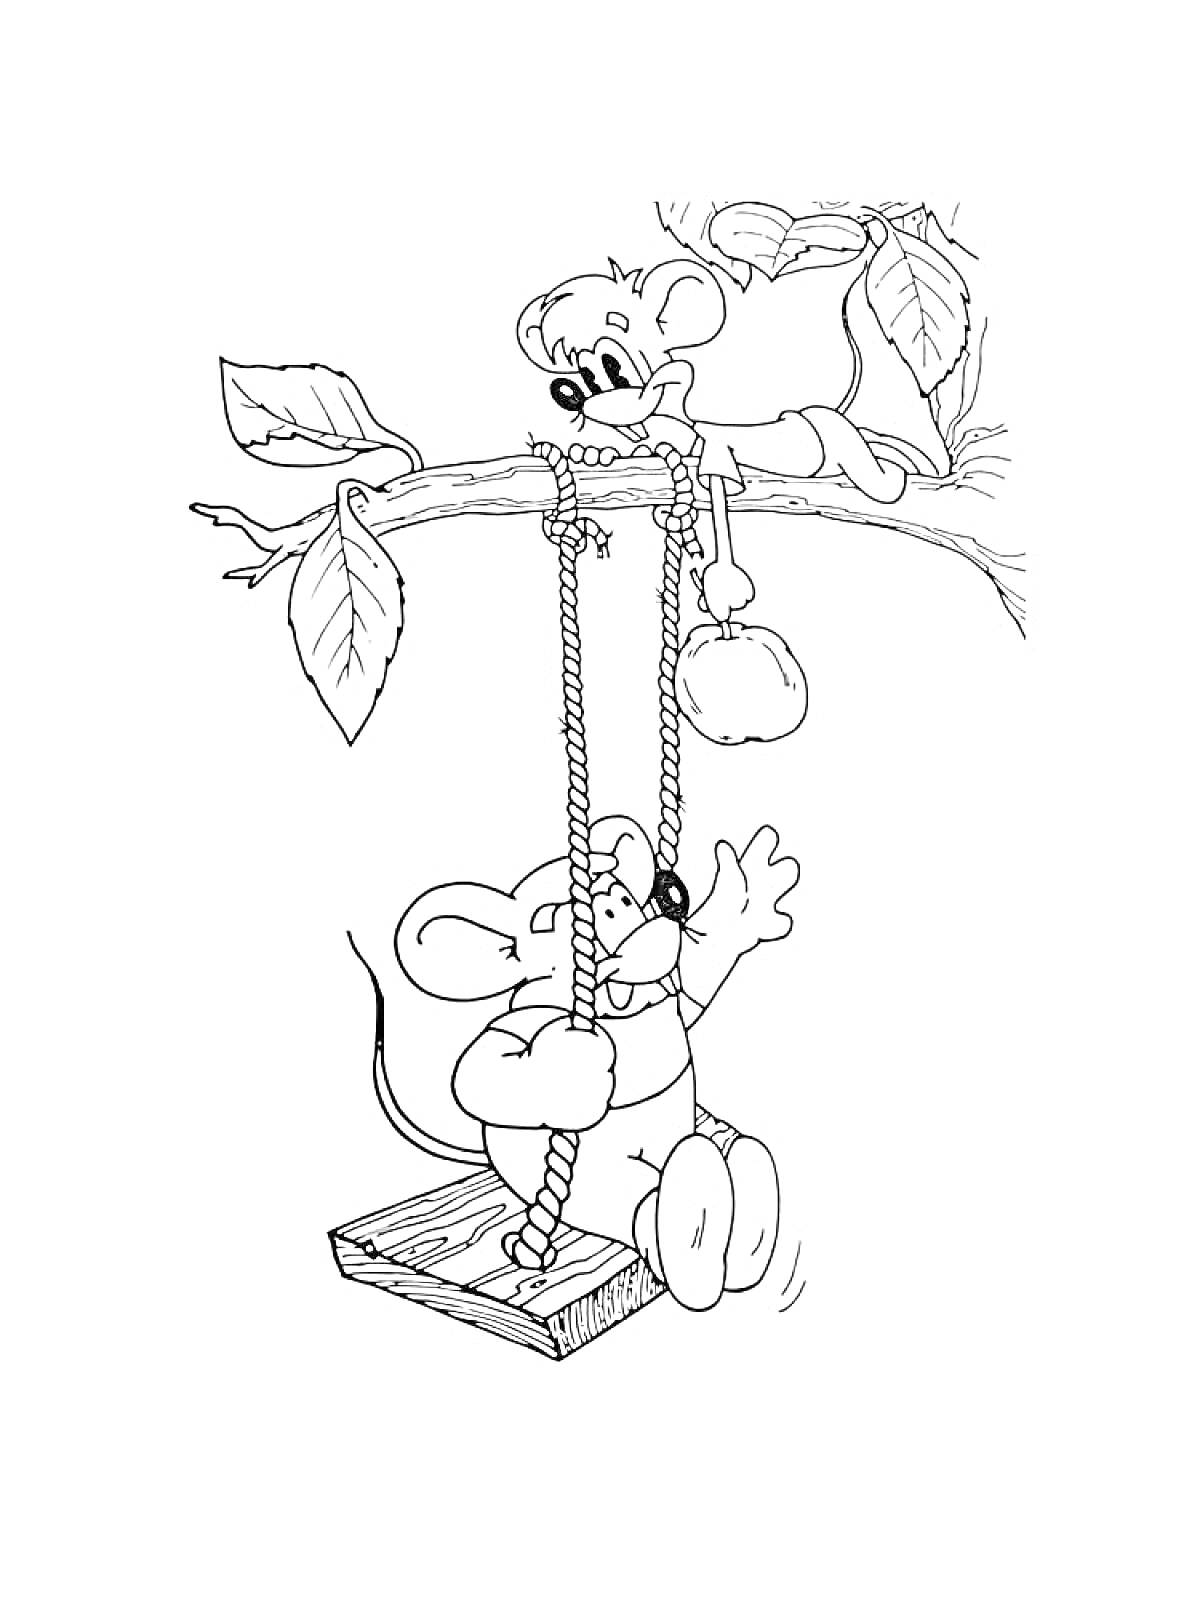 Раскраска Раскраска с двумя мышами на качелях, одна мышь на ветке и другая на деревянной качели